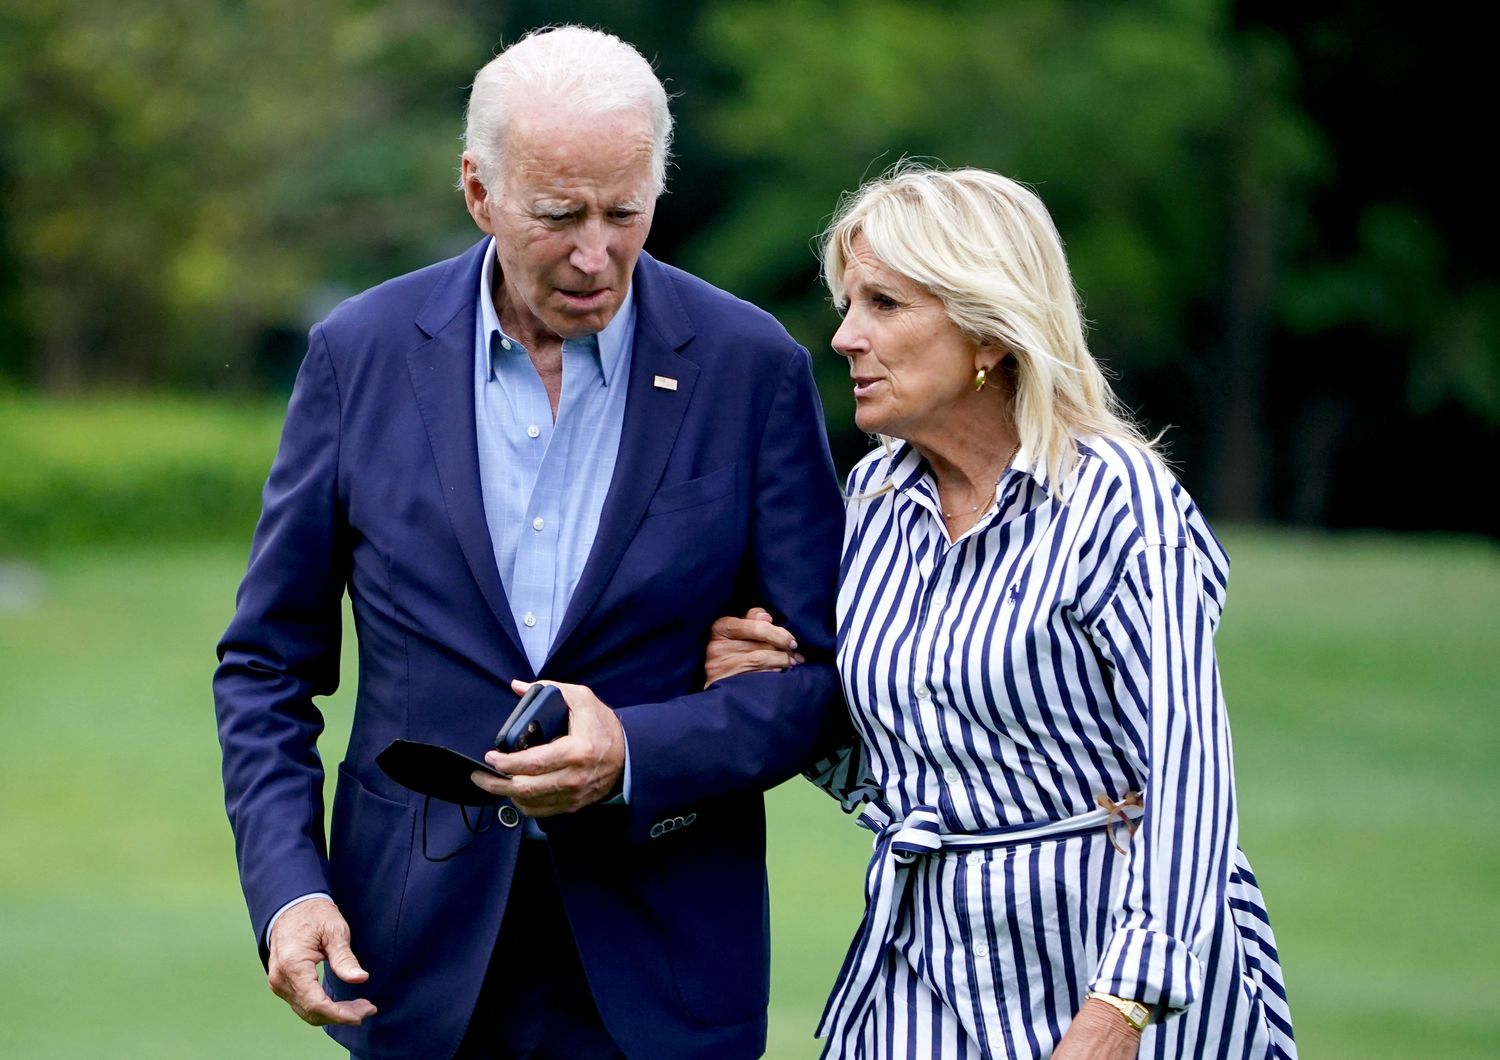 Joe e Jill Biden